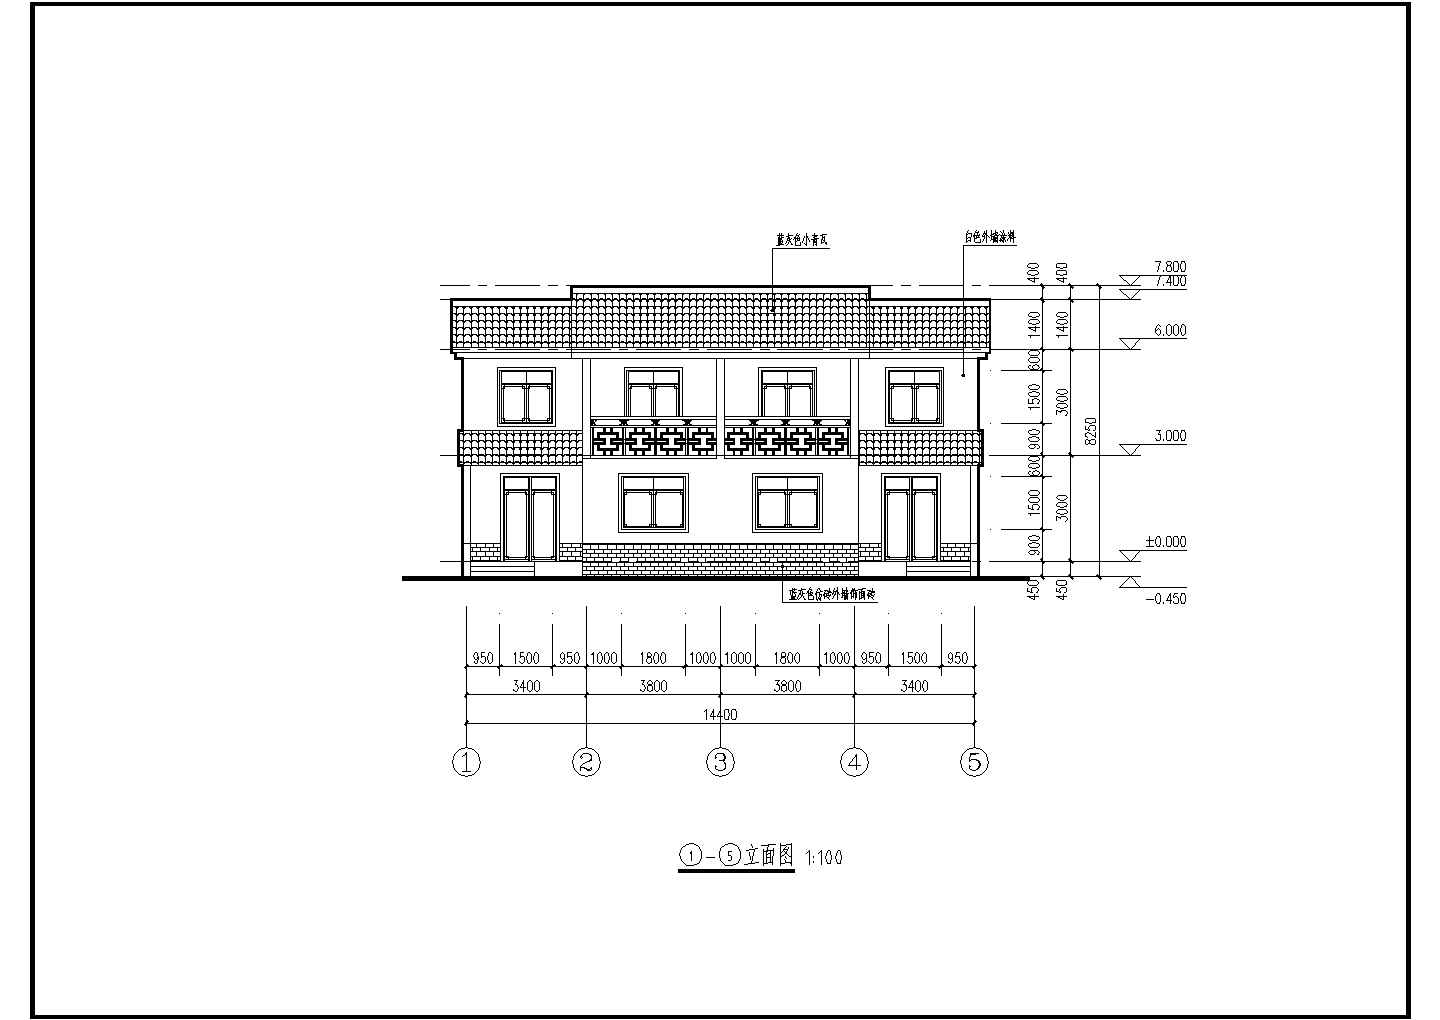 西南农居房三人户两层框架结构农村双拼别墅建筑设计施工图纸